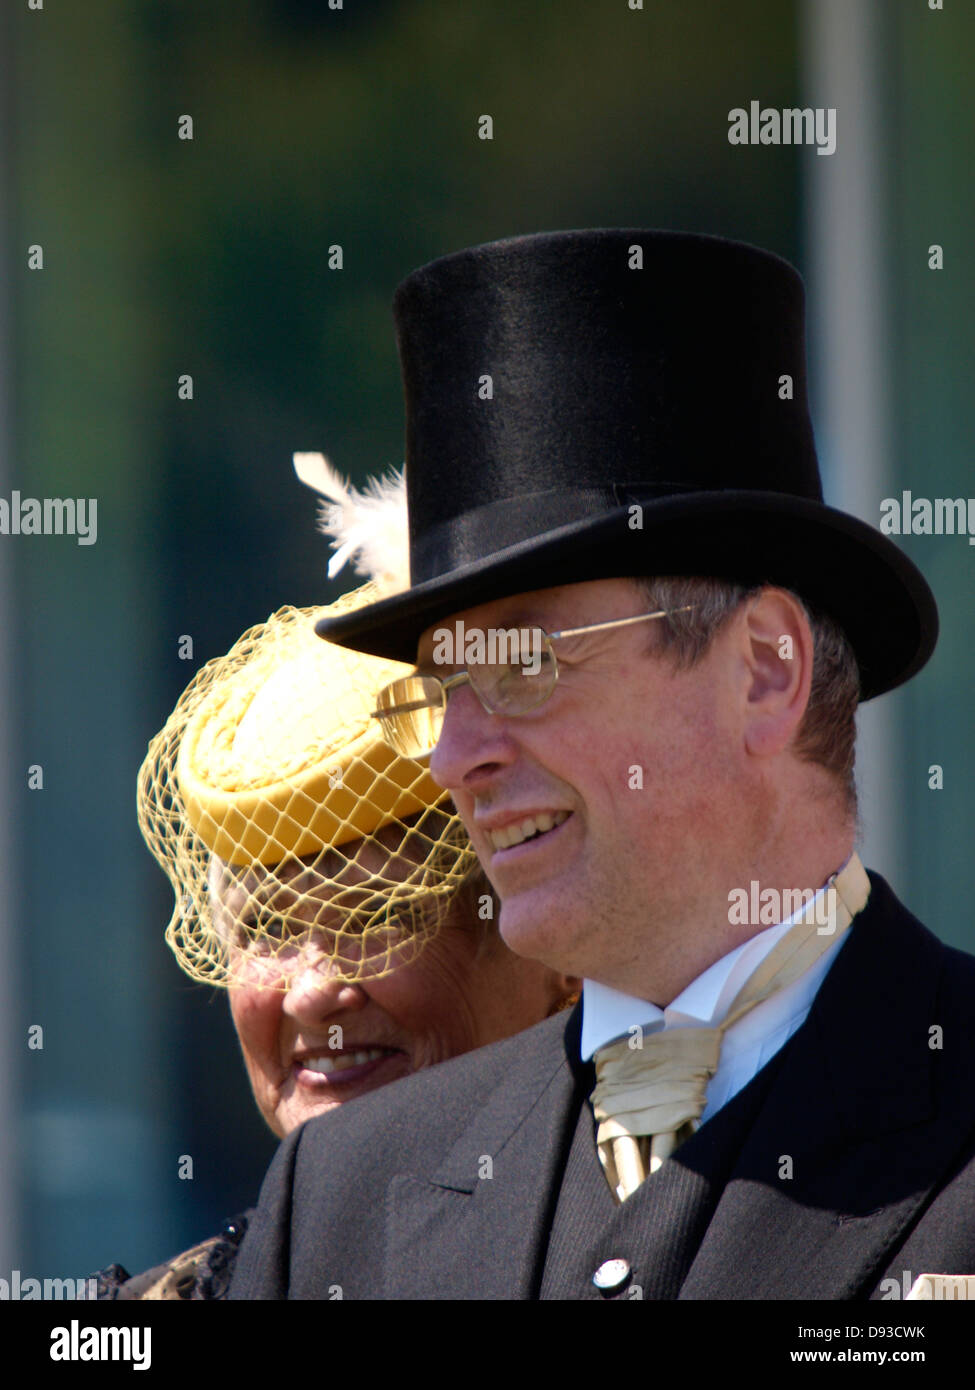 Uomo in top hat, donna in hat con velo, Regno Unito 2013 Foto Stock